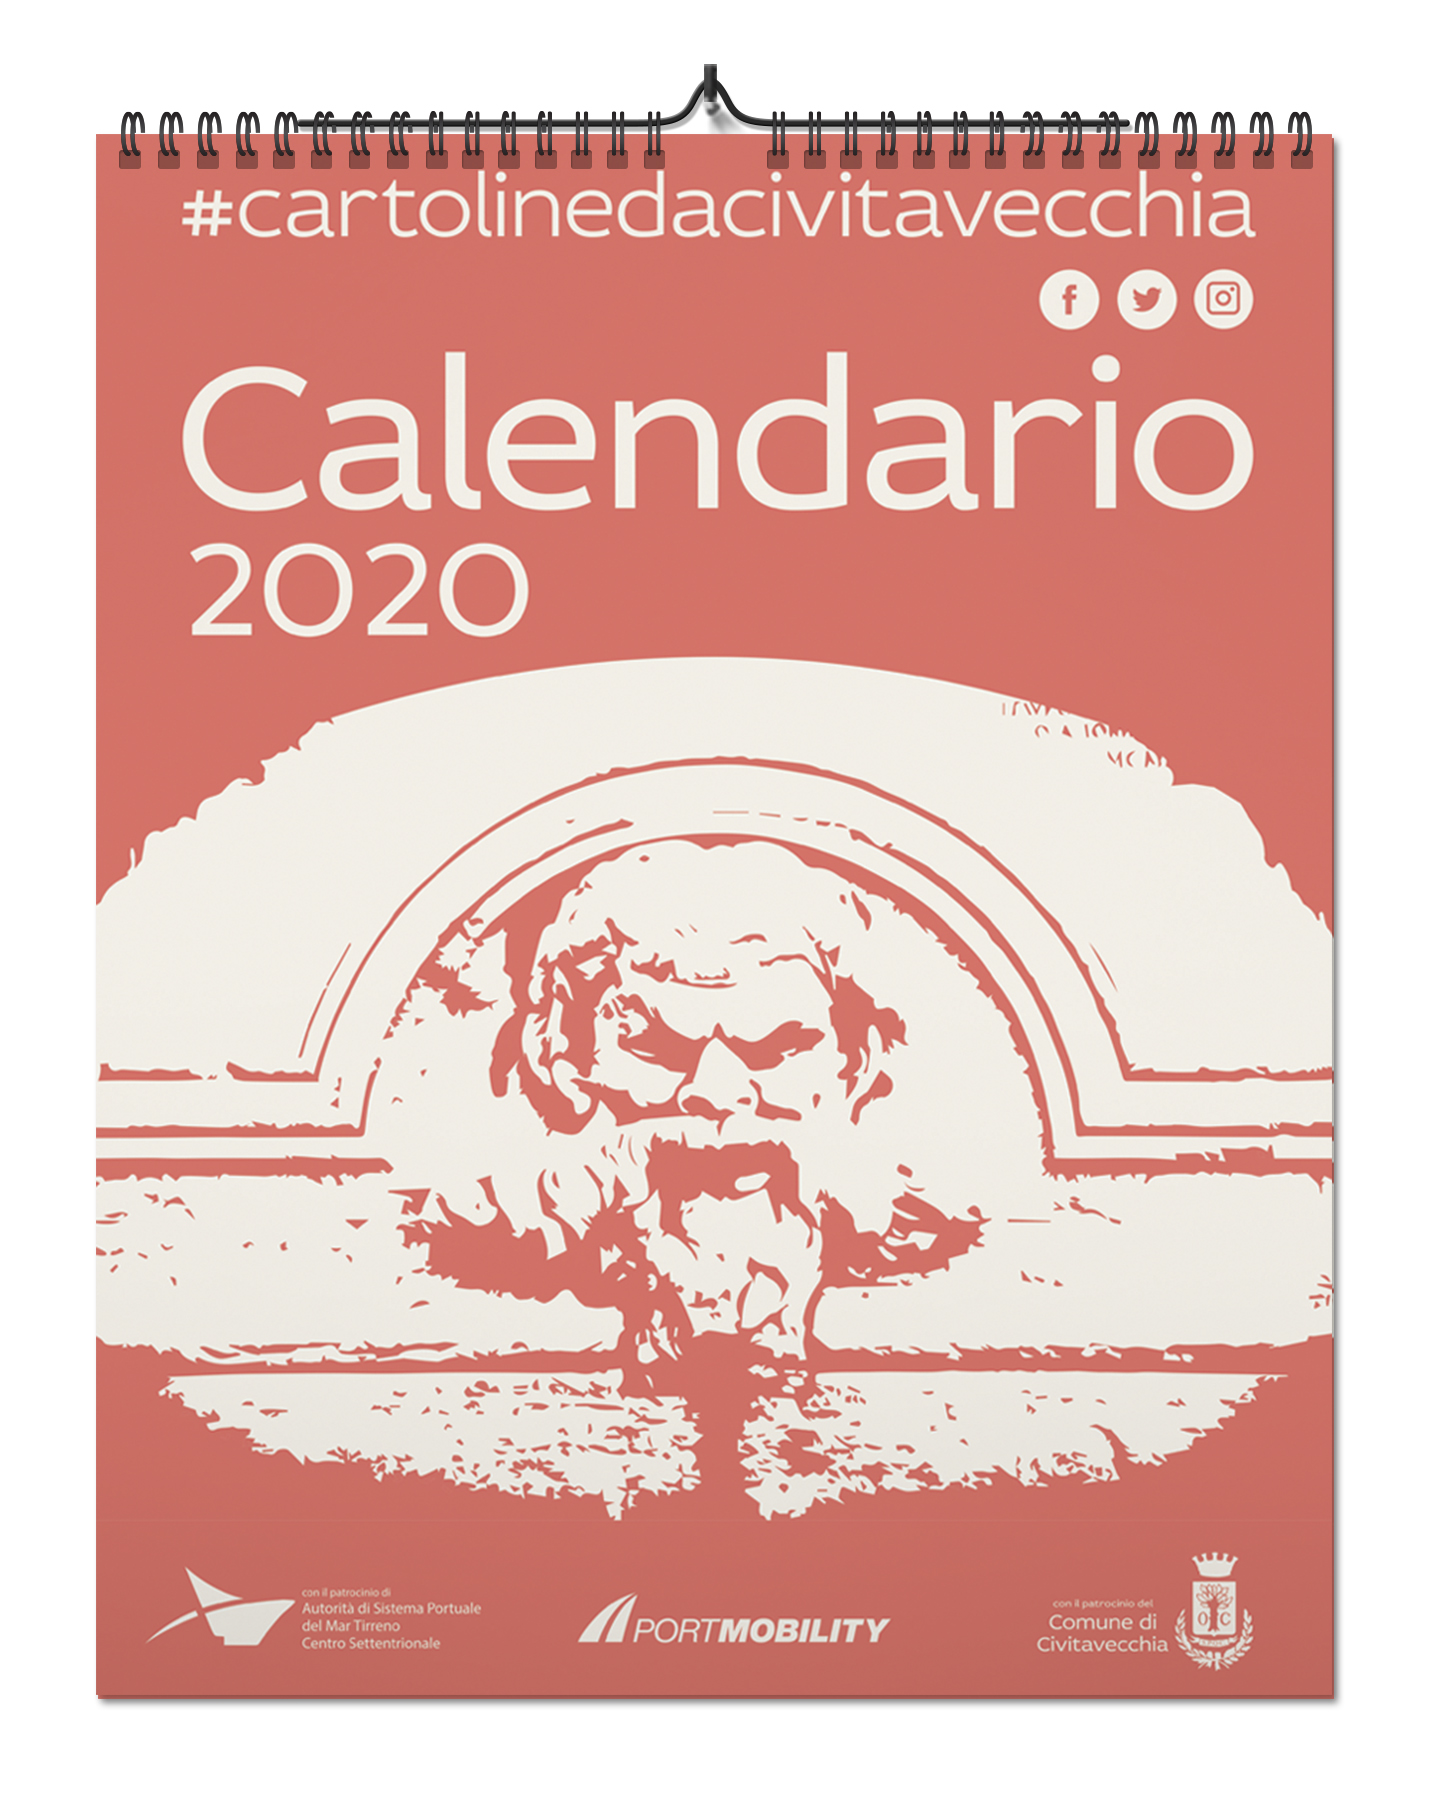 Cartoline da Civitavecchia 2020: la copertina del calendario